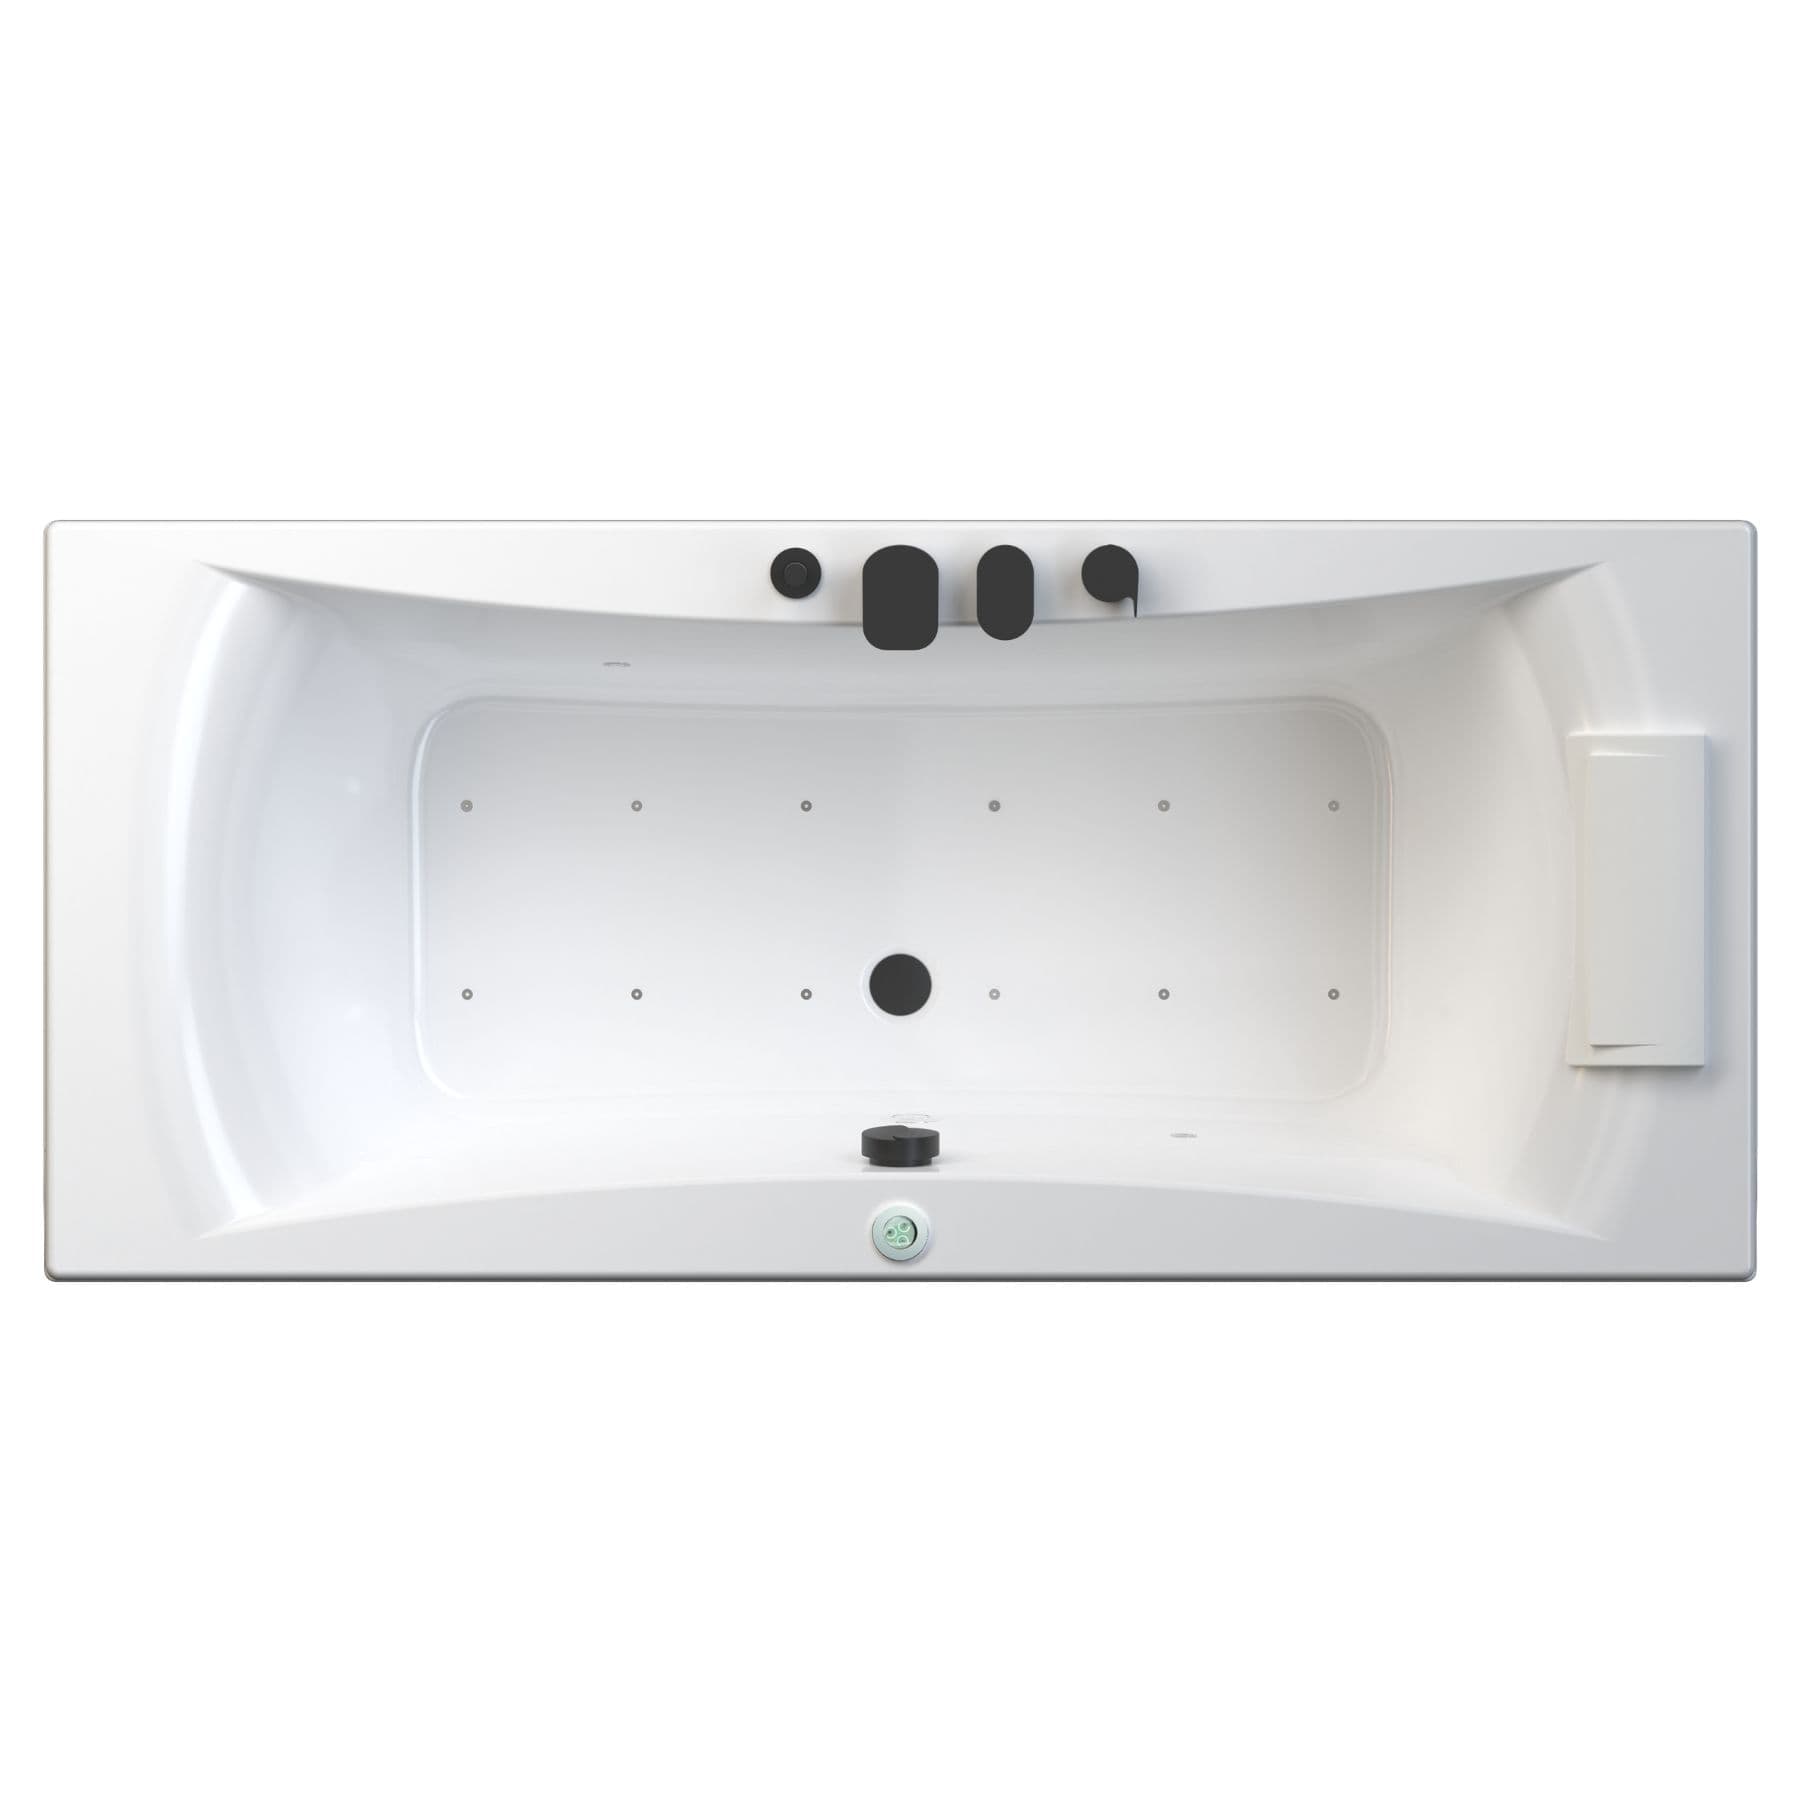 Baignoire balnéo CONCERTO 180x80 sur châssis métal, système balnéo STAR MIXTE DIGIT tête bain à droite